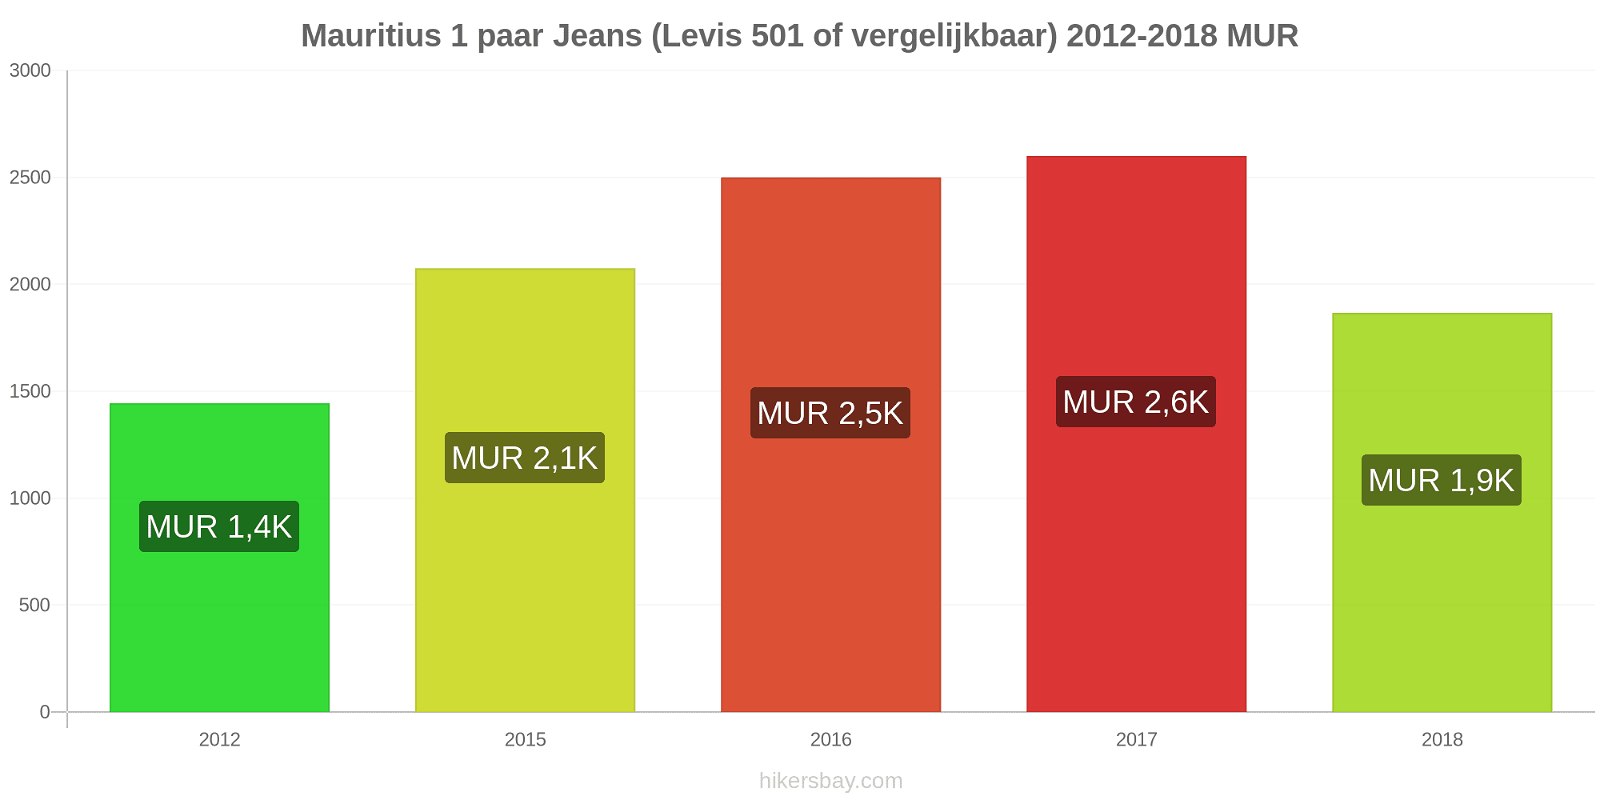 Mauritius prijswijzigingen 1 paar jeans (Levis 501 of vergelijkbaar) hikersbay.com